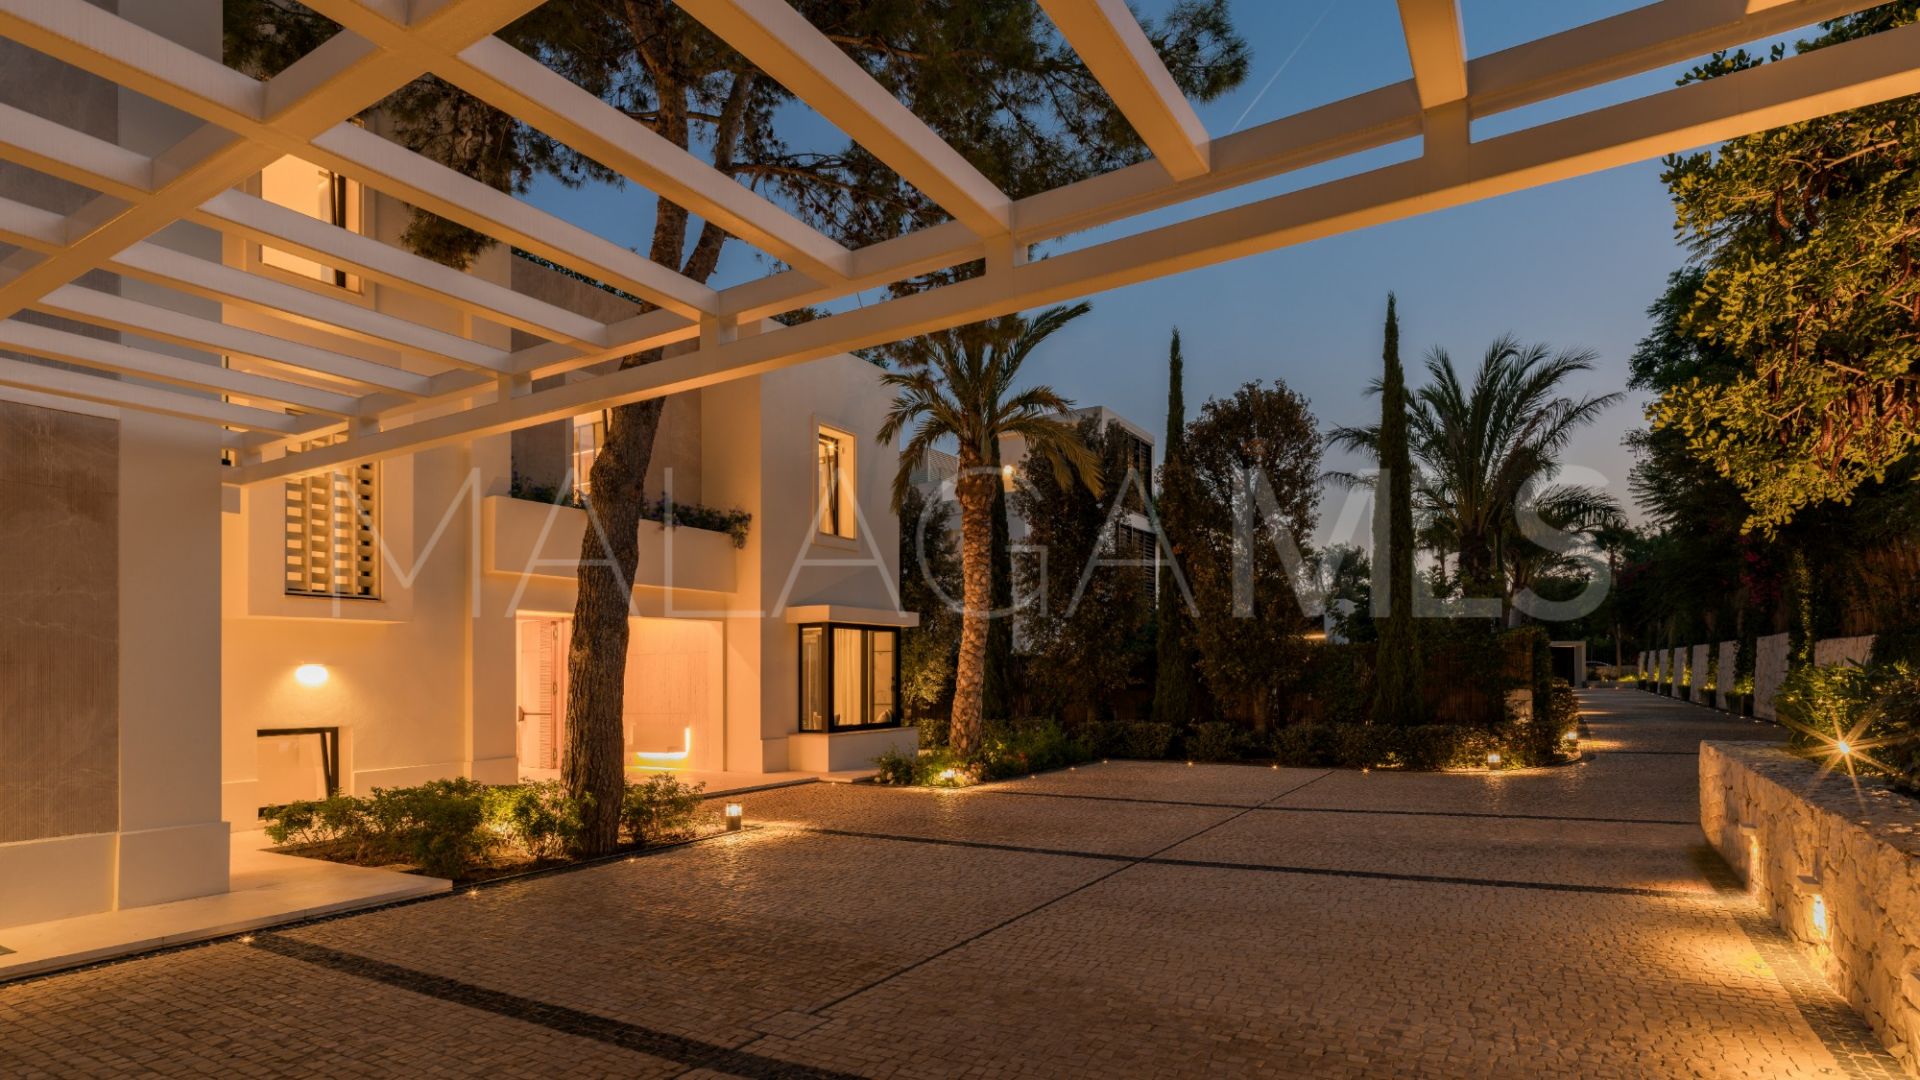 Buy Altos Reales villa with 5 bedrooms